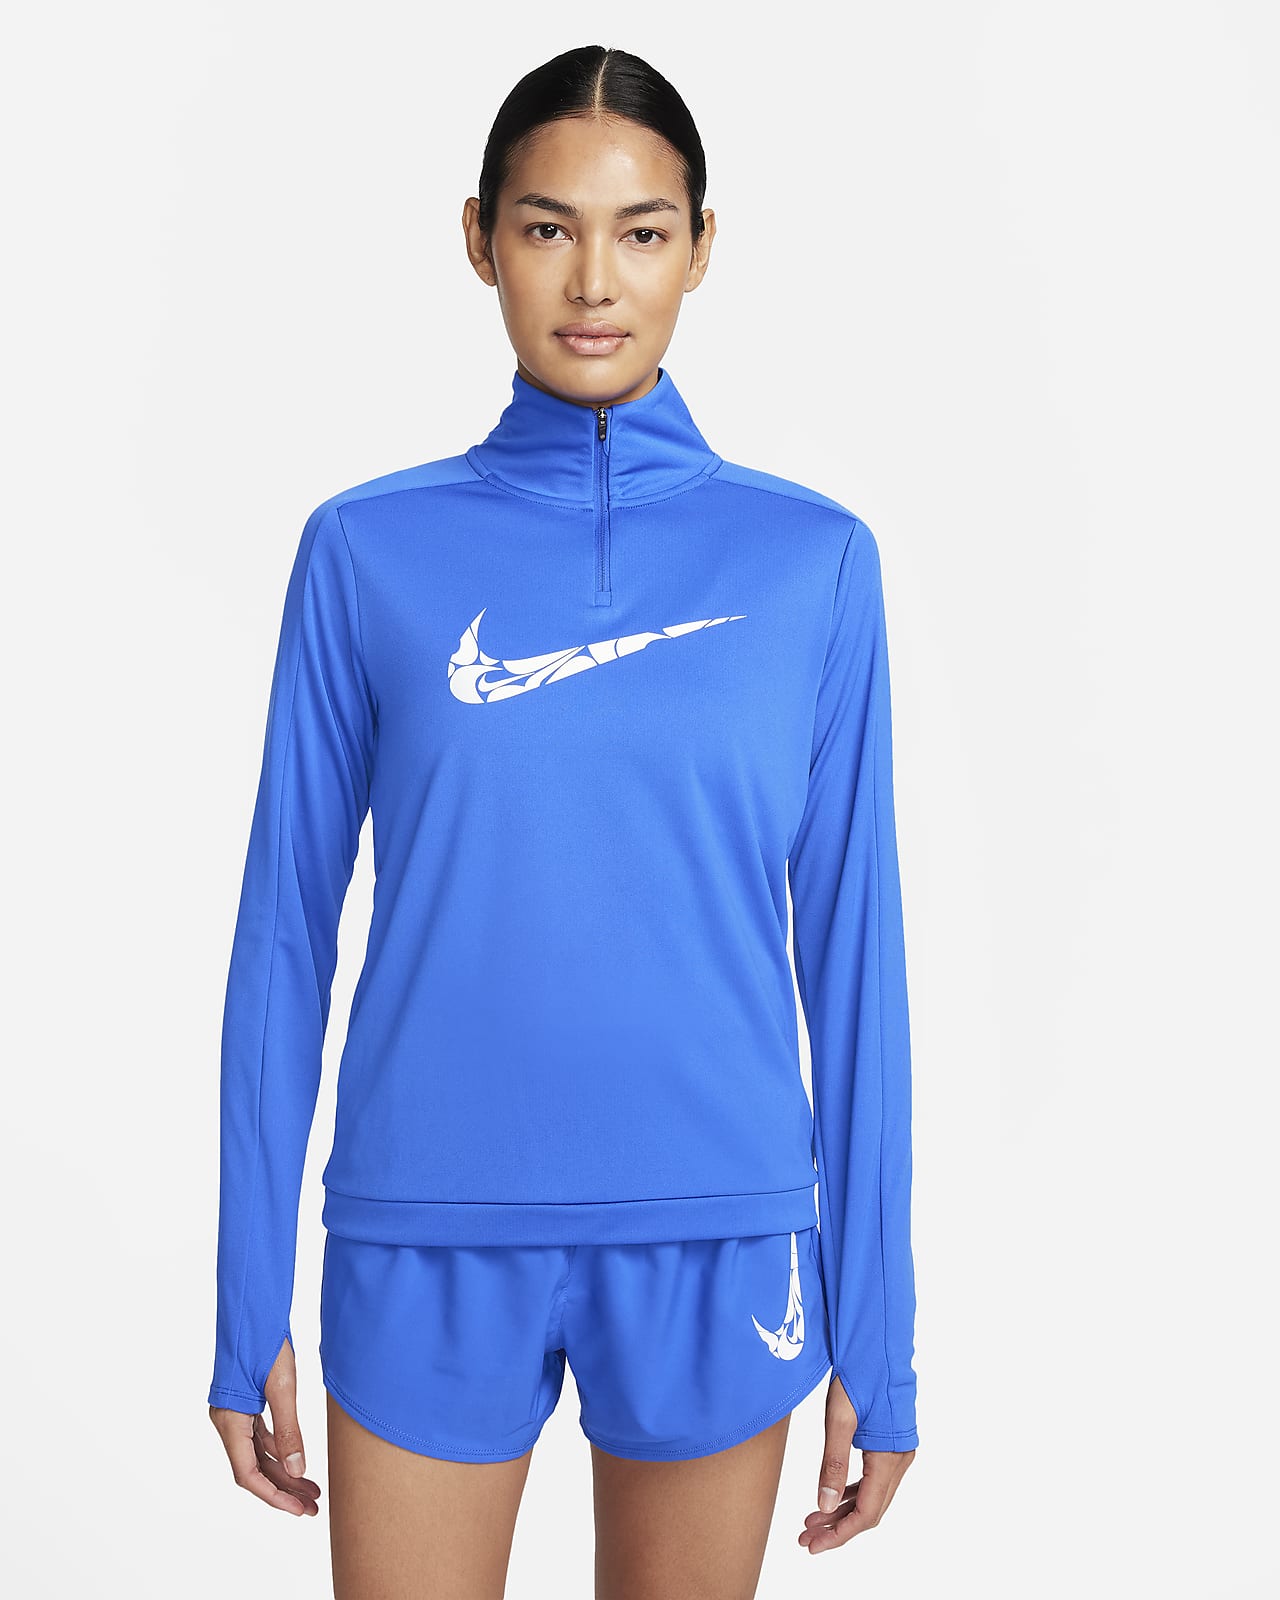 Vêtement deuxième couche de running Nike Running Division pour femme. Nike  BE